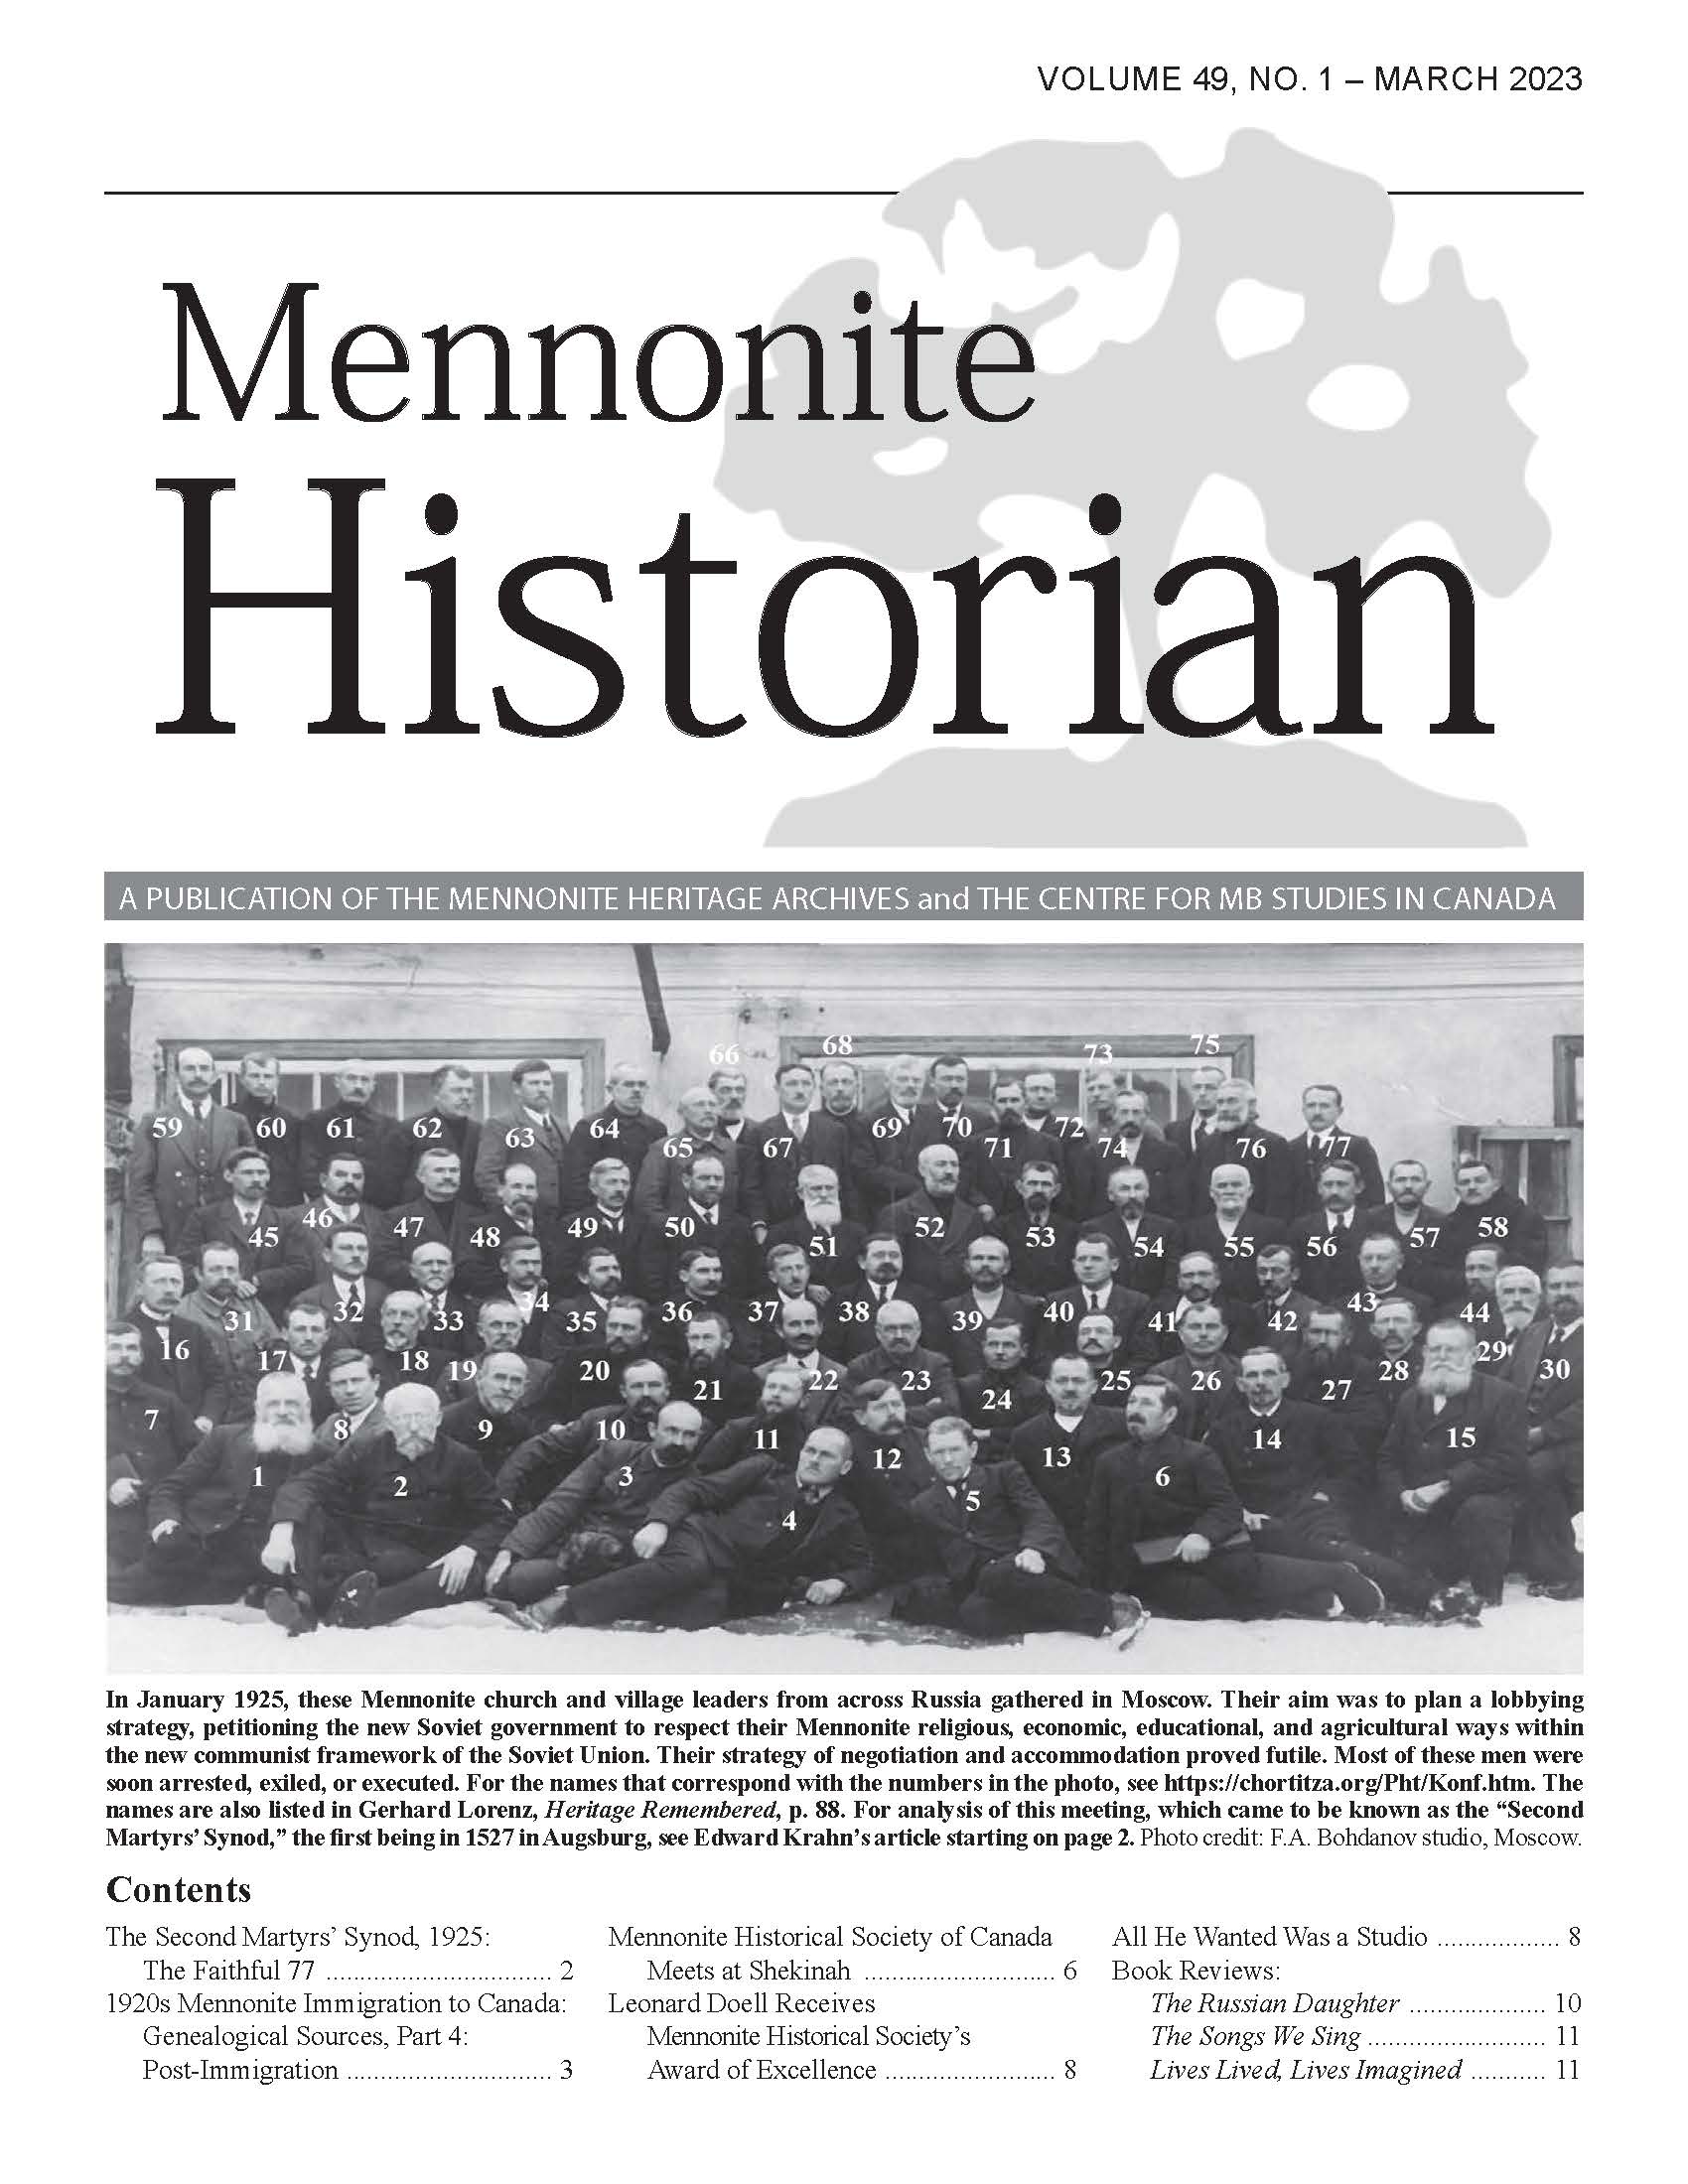 Mennonite Historian (March 2023)